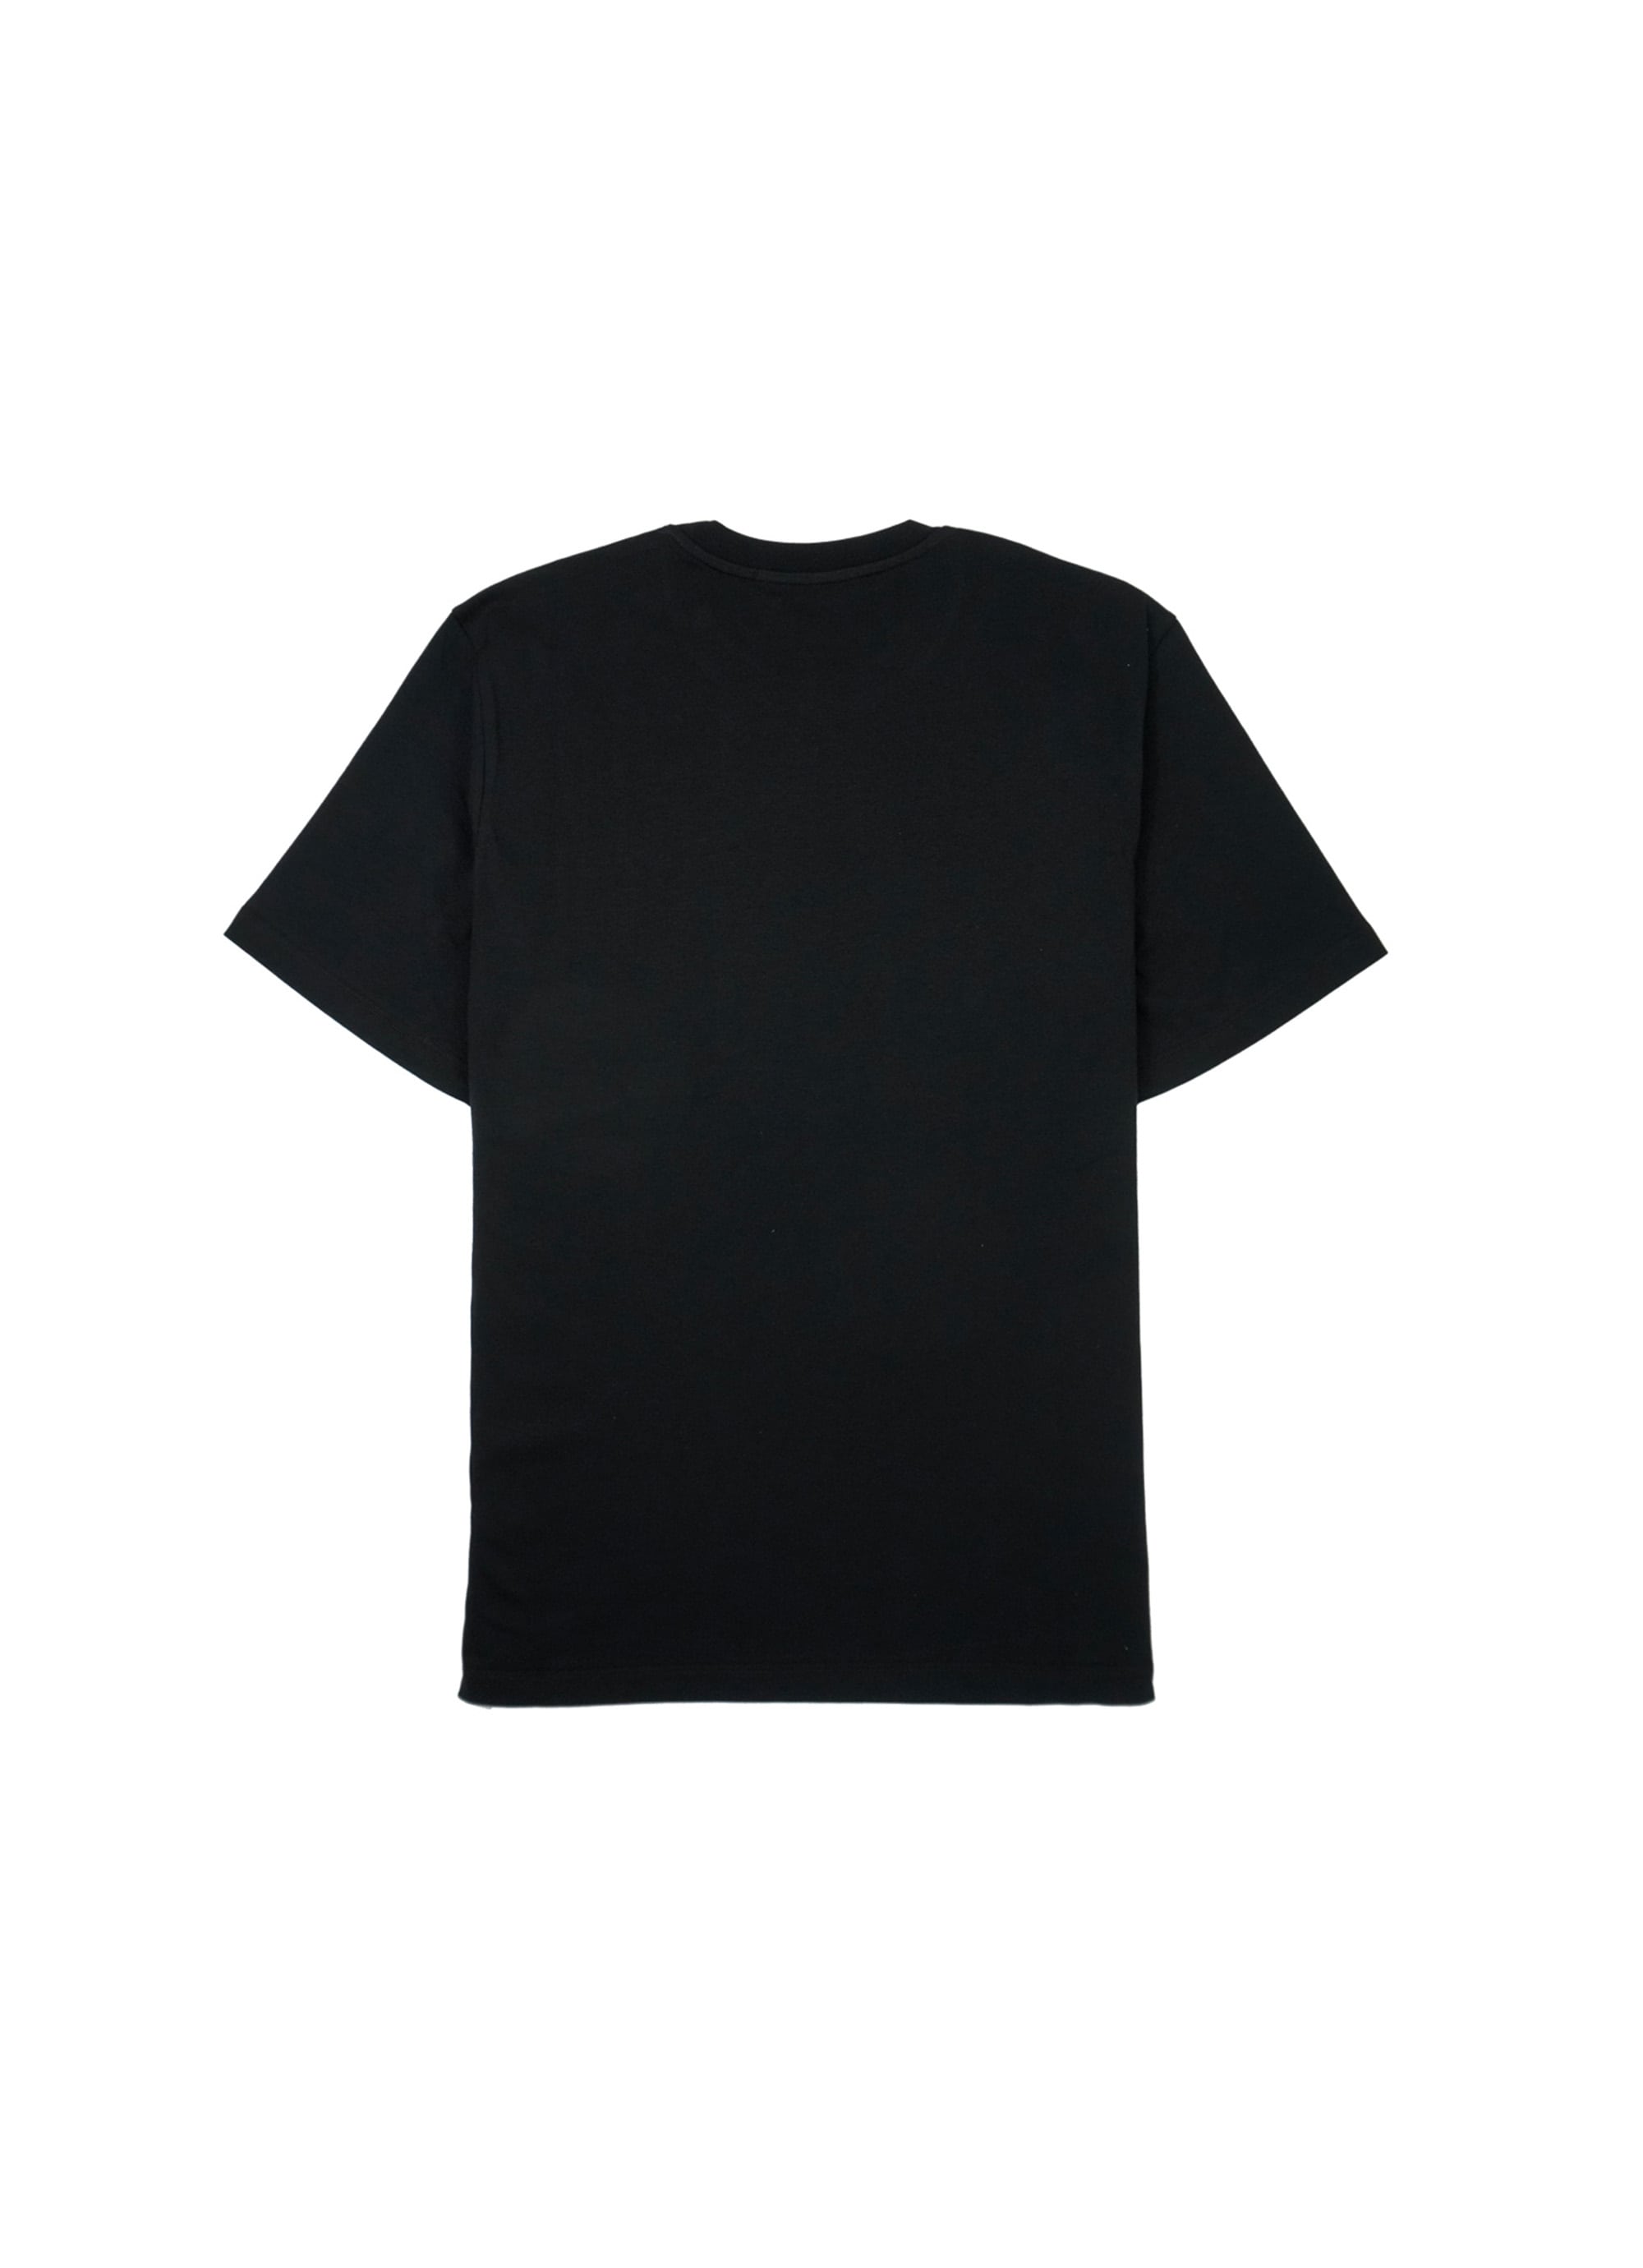 MSGM ブラッシュロゴ Tシャツ【Japan Exclusive/FOIL PRINT】 詳細画像 ブラック×シルバー 2